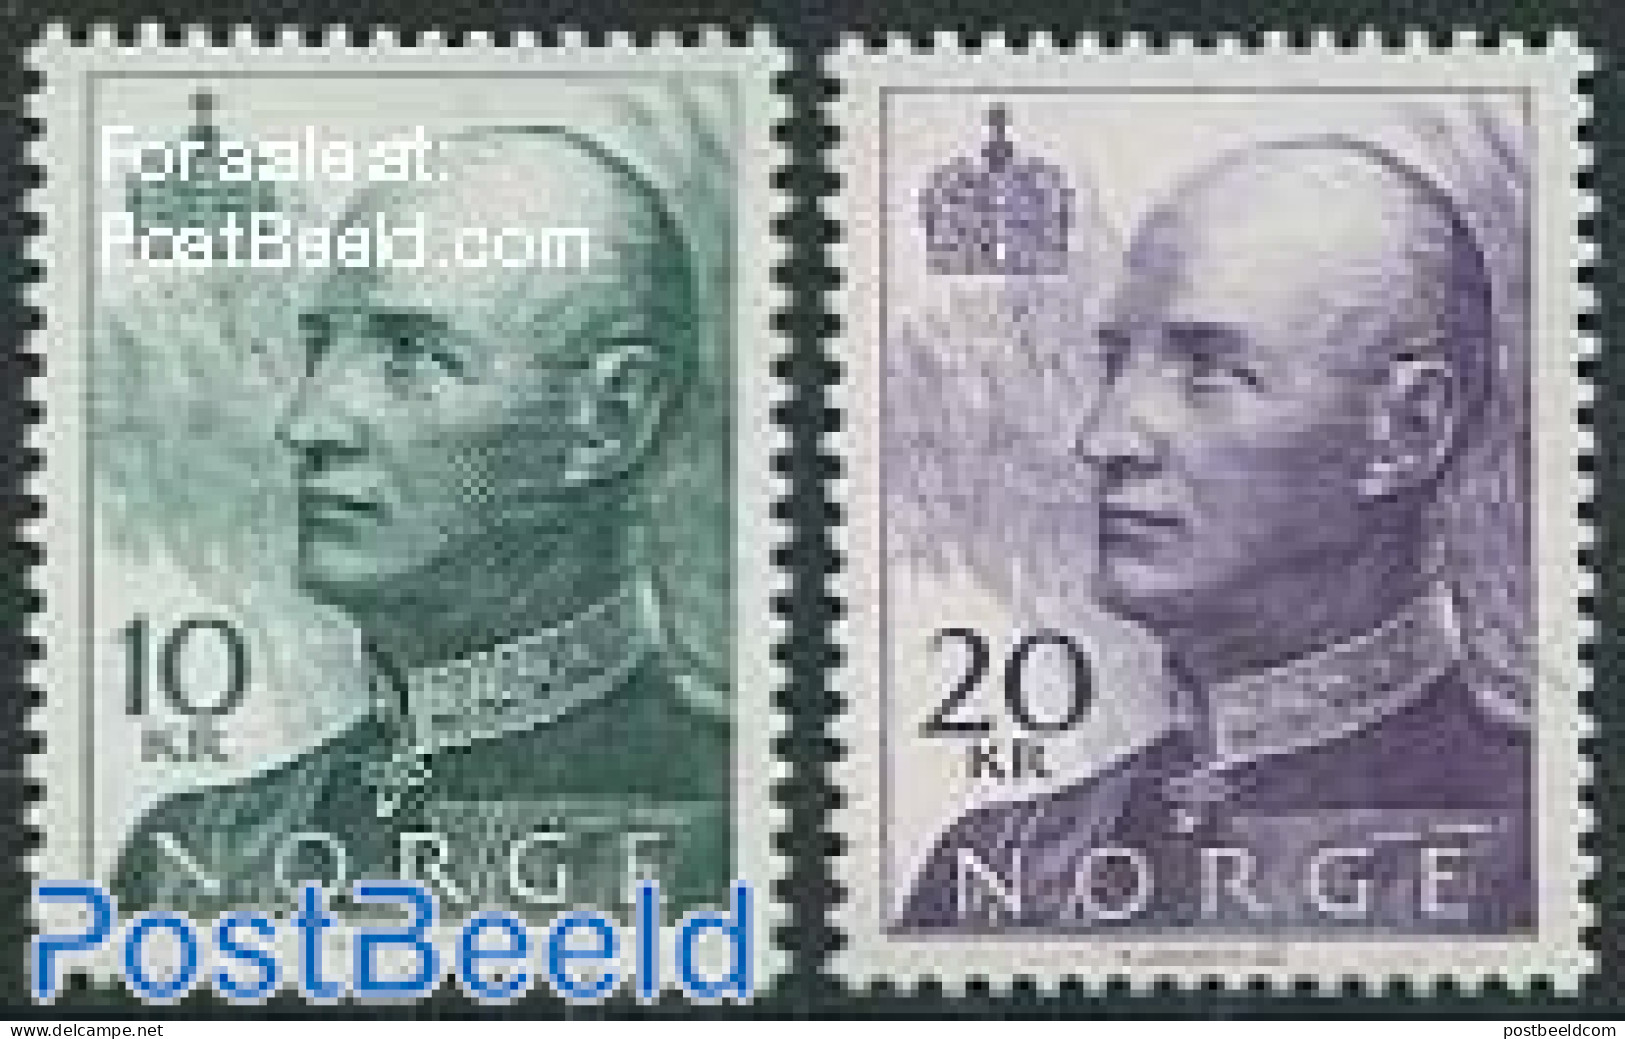 Norway 1993 Definitives 2v, Phosphor, Mint NH - Unused Stamps